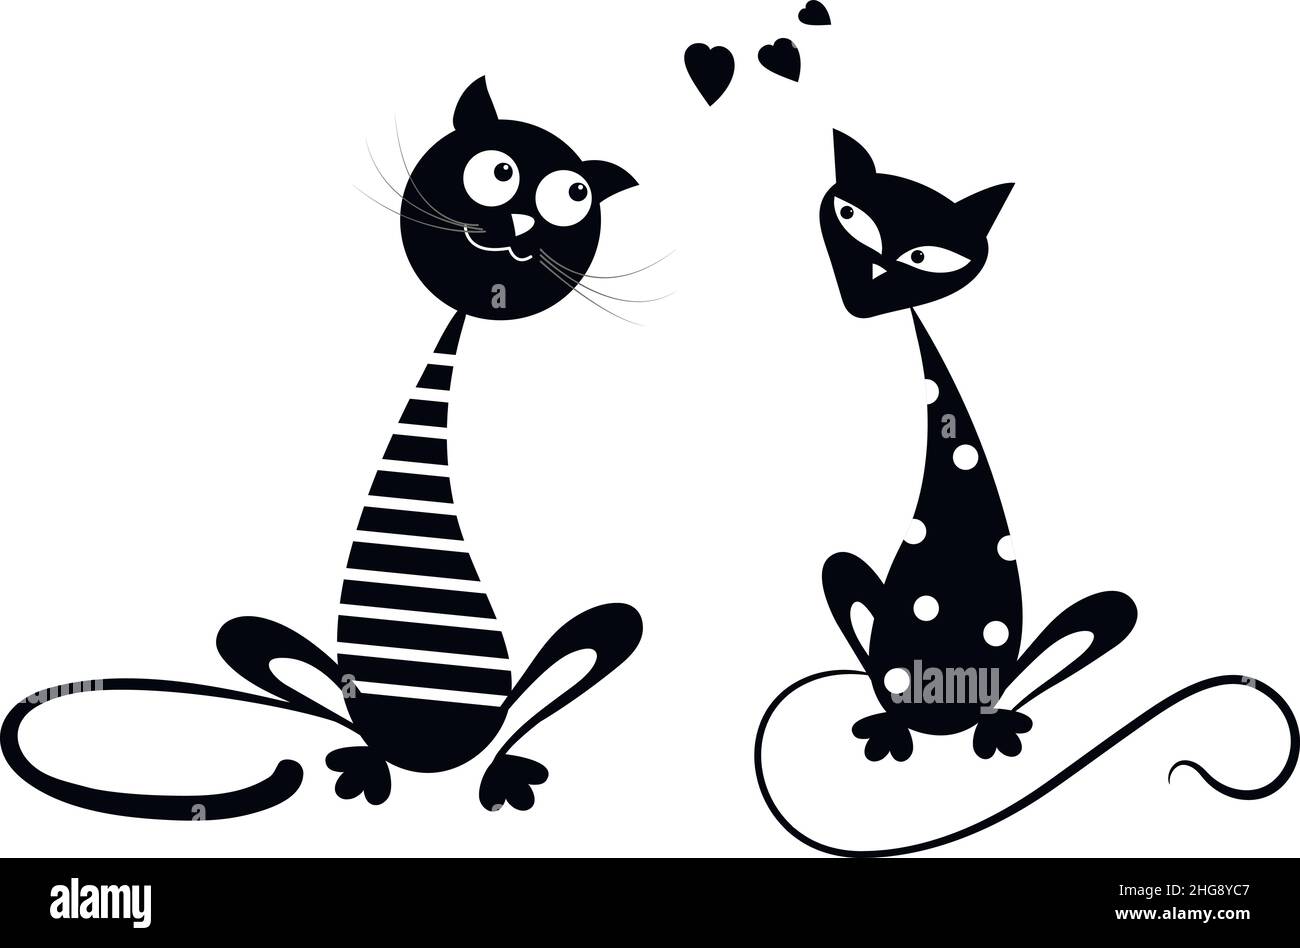 Paire de chats noirs.Personnages de dessin animé.Drôle de chat marin et chat mignon en pois blancs.Emblème pour textiles, imprimé sur les t-shirts jumelés.Illustration vectorielle isolée sur fond blanc. Illustration de Vecteur